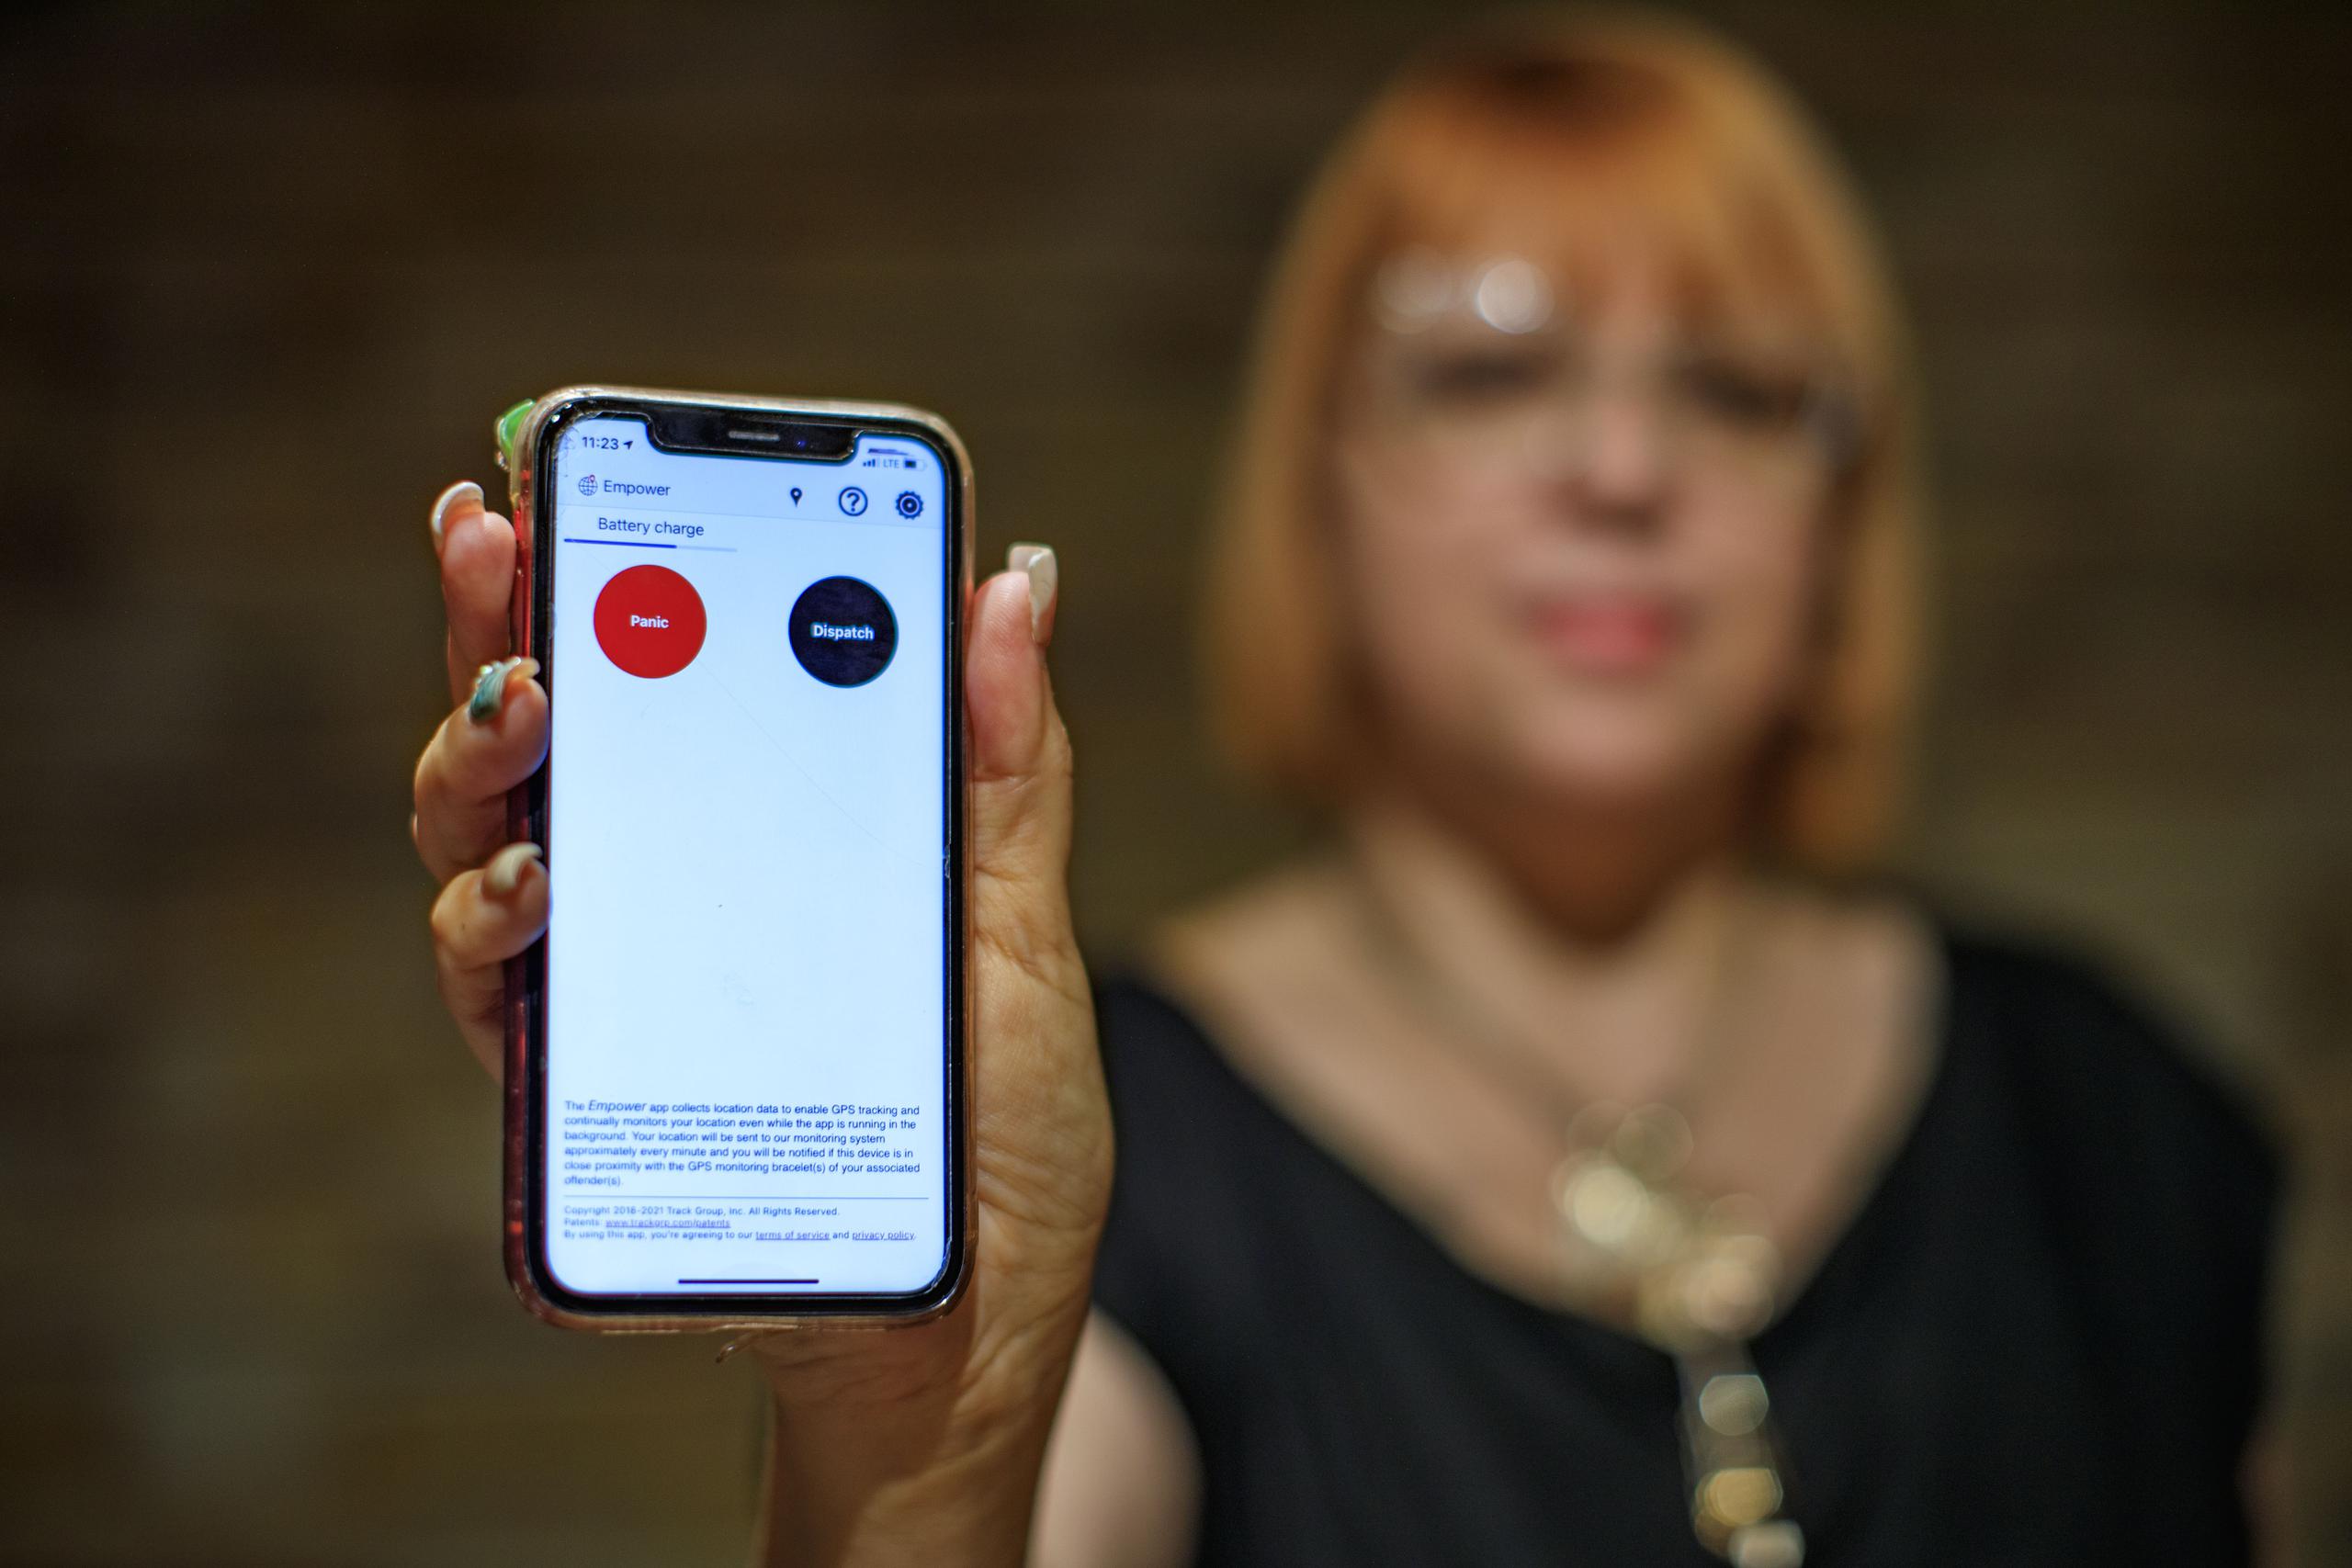 Solo siete mujeres víctimas de violencia de género, entre ellas Maribel Meléndez, tienen en su teléfono móvil el “app” EMPOWER, que les indica cuando el agresor está cerca.